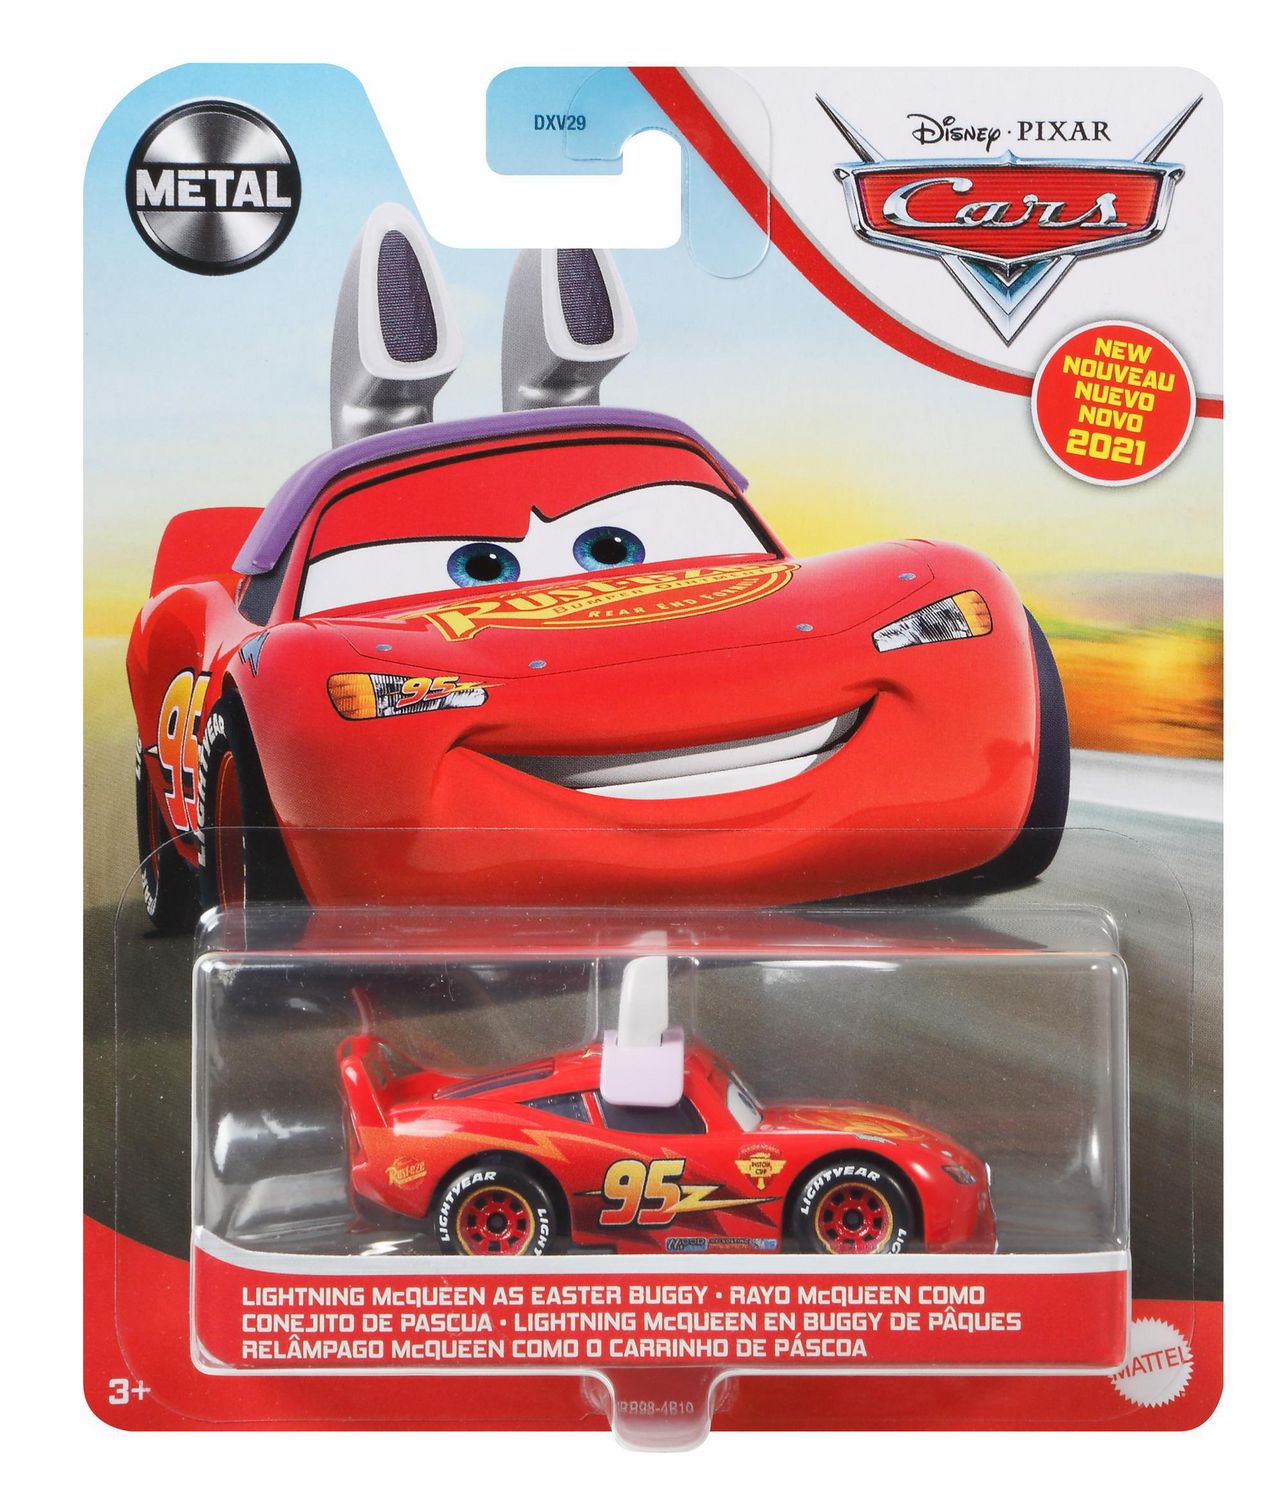 Disney Pixar Cars Coffret 5 Voitures Échelle 1/55 Spécial 100 Ans